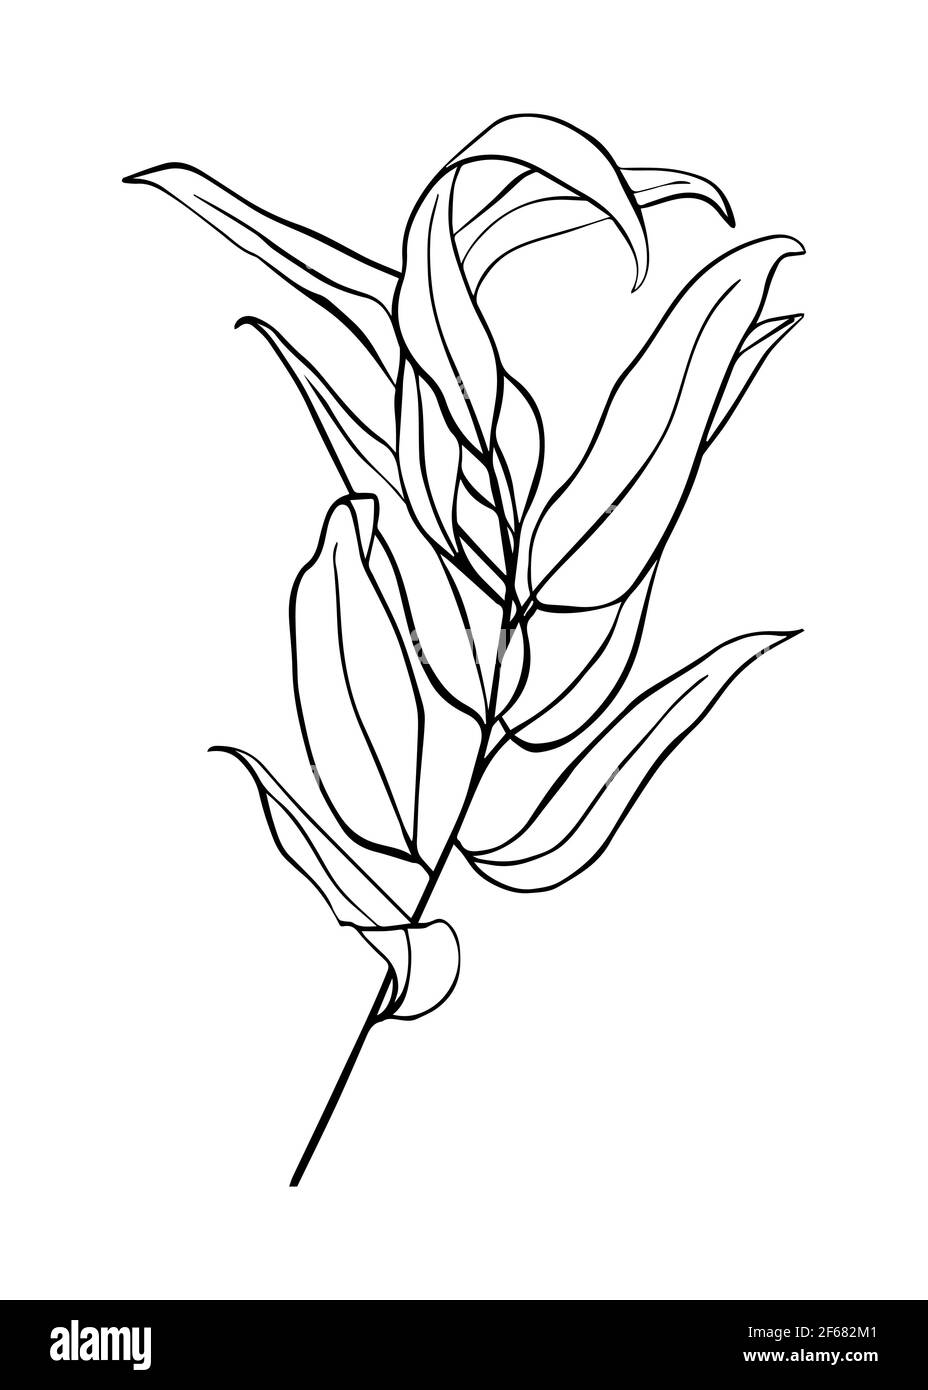 Isolierter Eukalyptuszweig auf weißem Hintergrund. Konturzeichnung von Hand. Doodle-Stil Stock Vektor